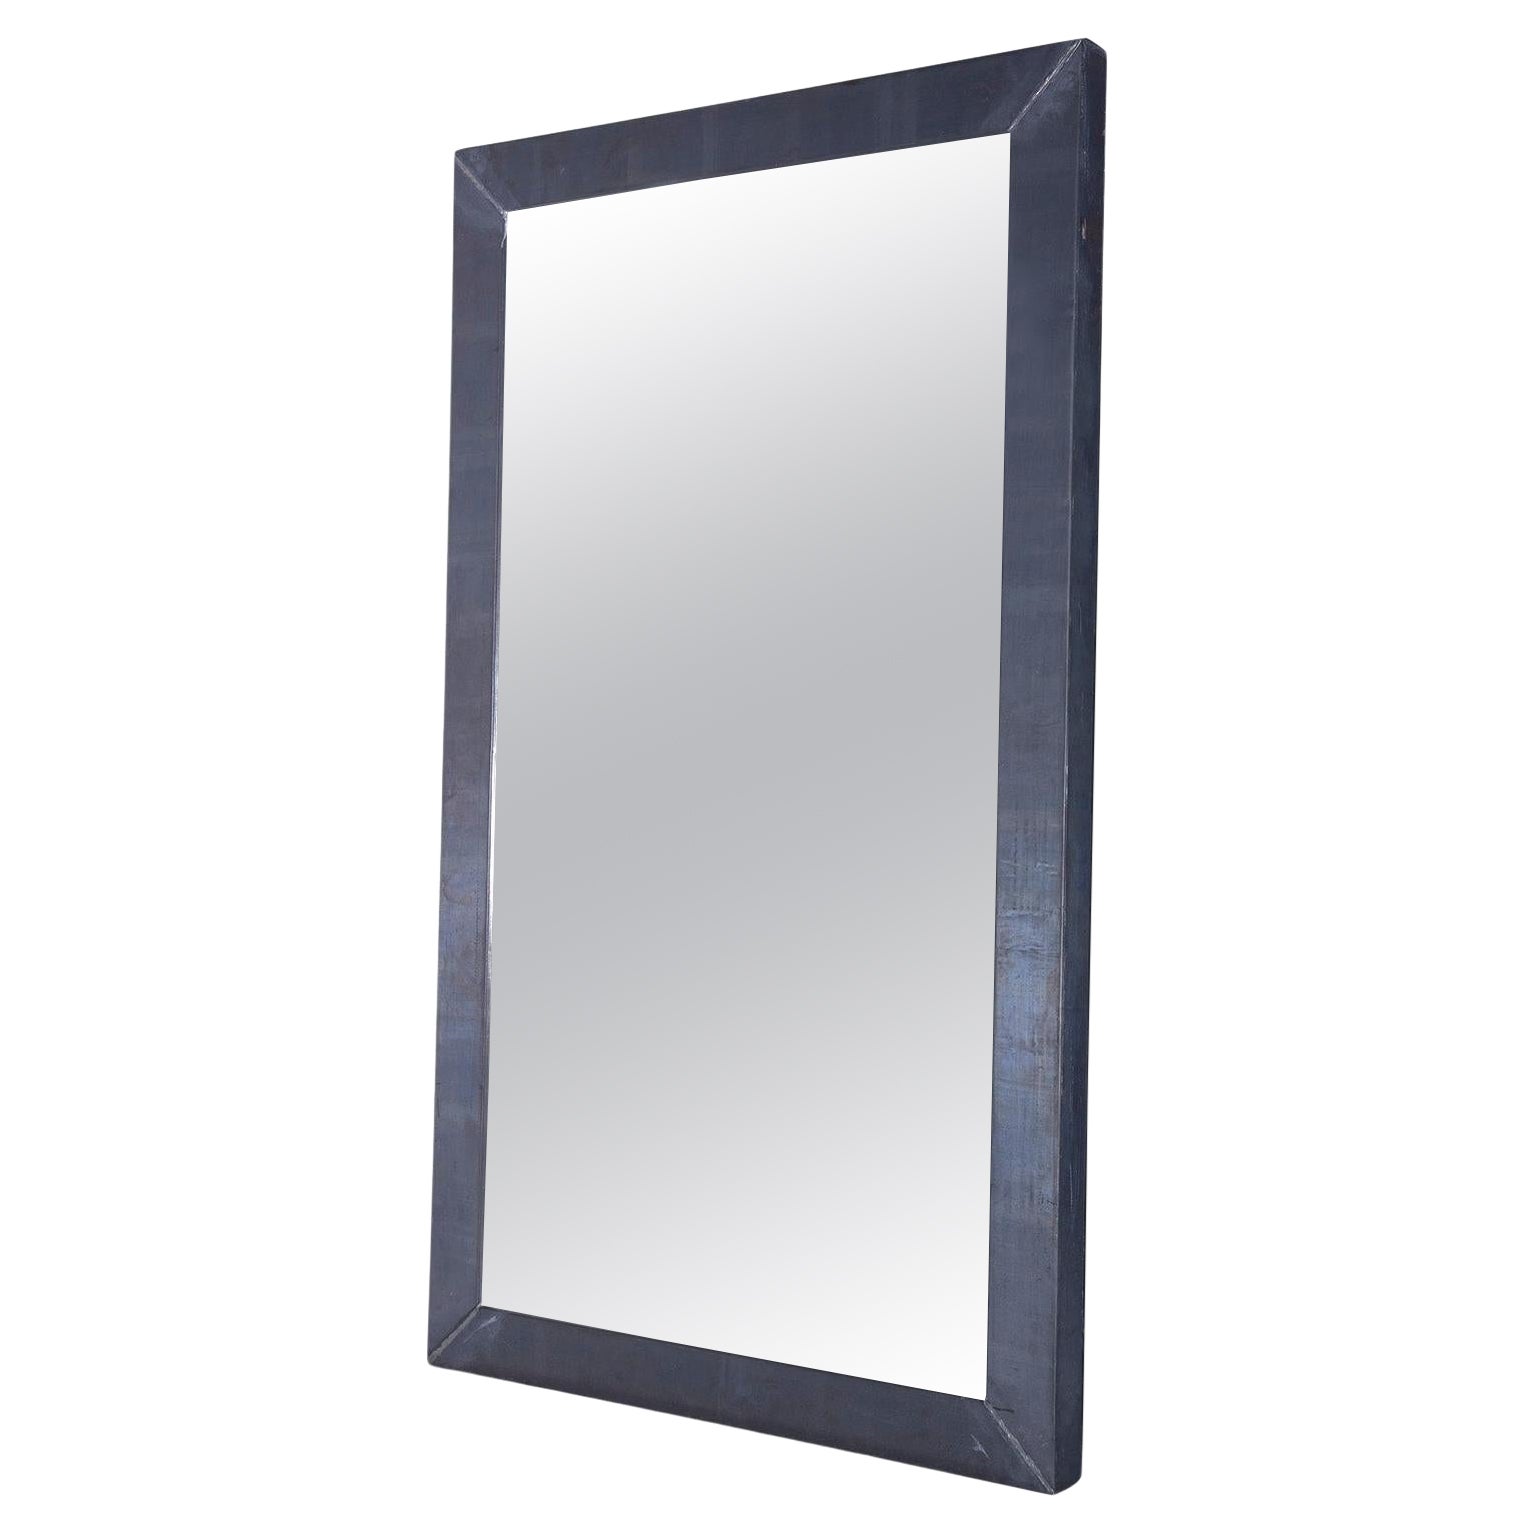 Boffi Italian Designer Steel Frame Mirror For Sale